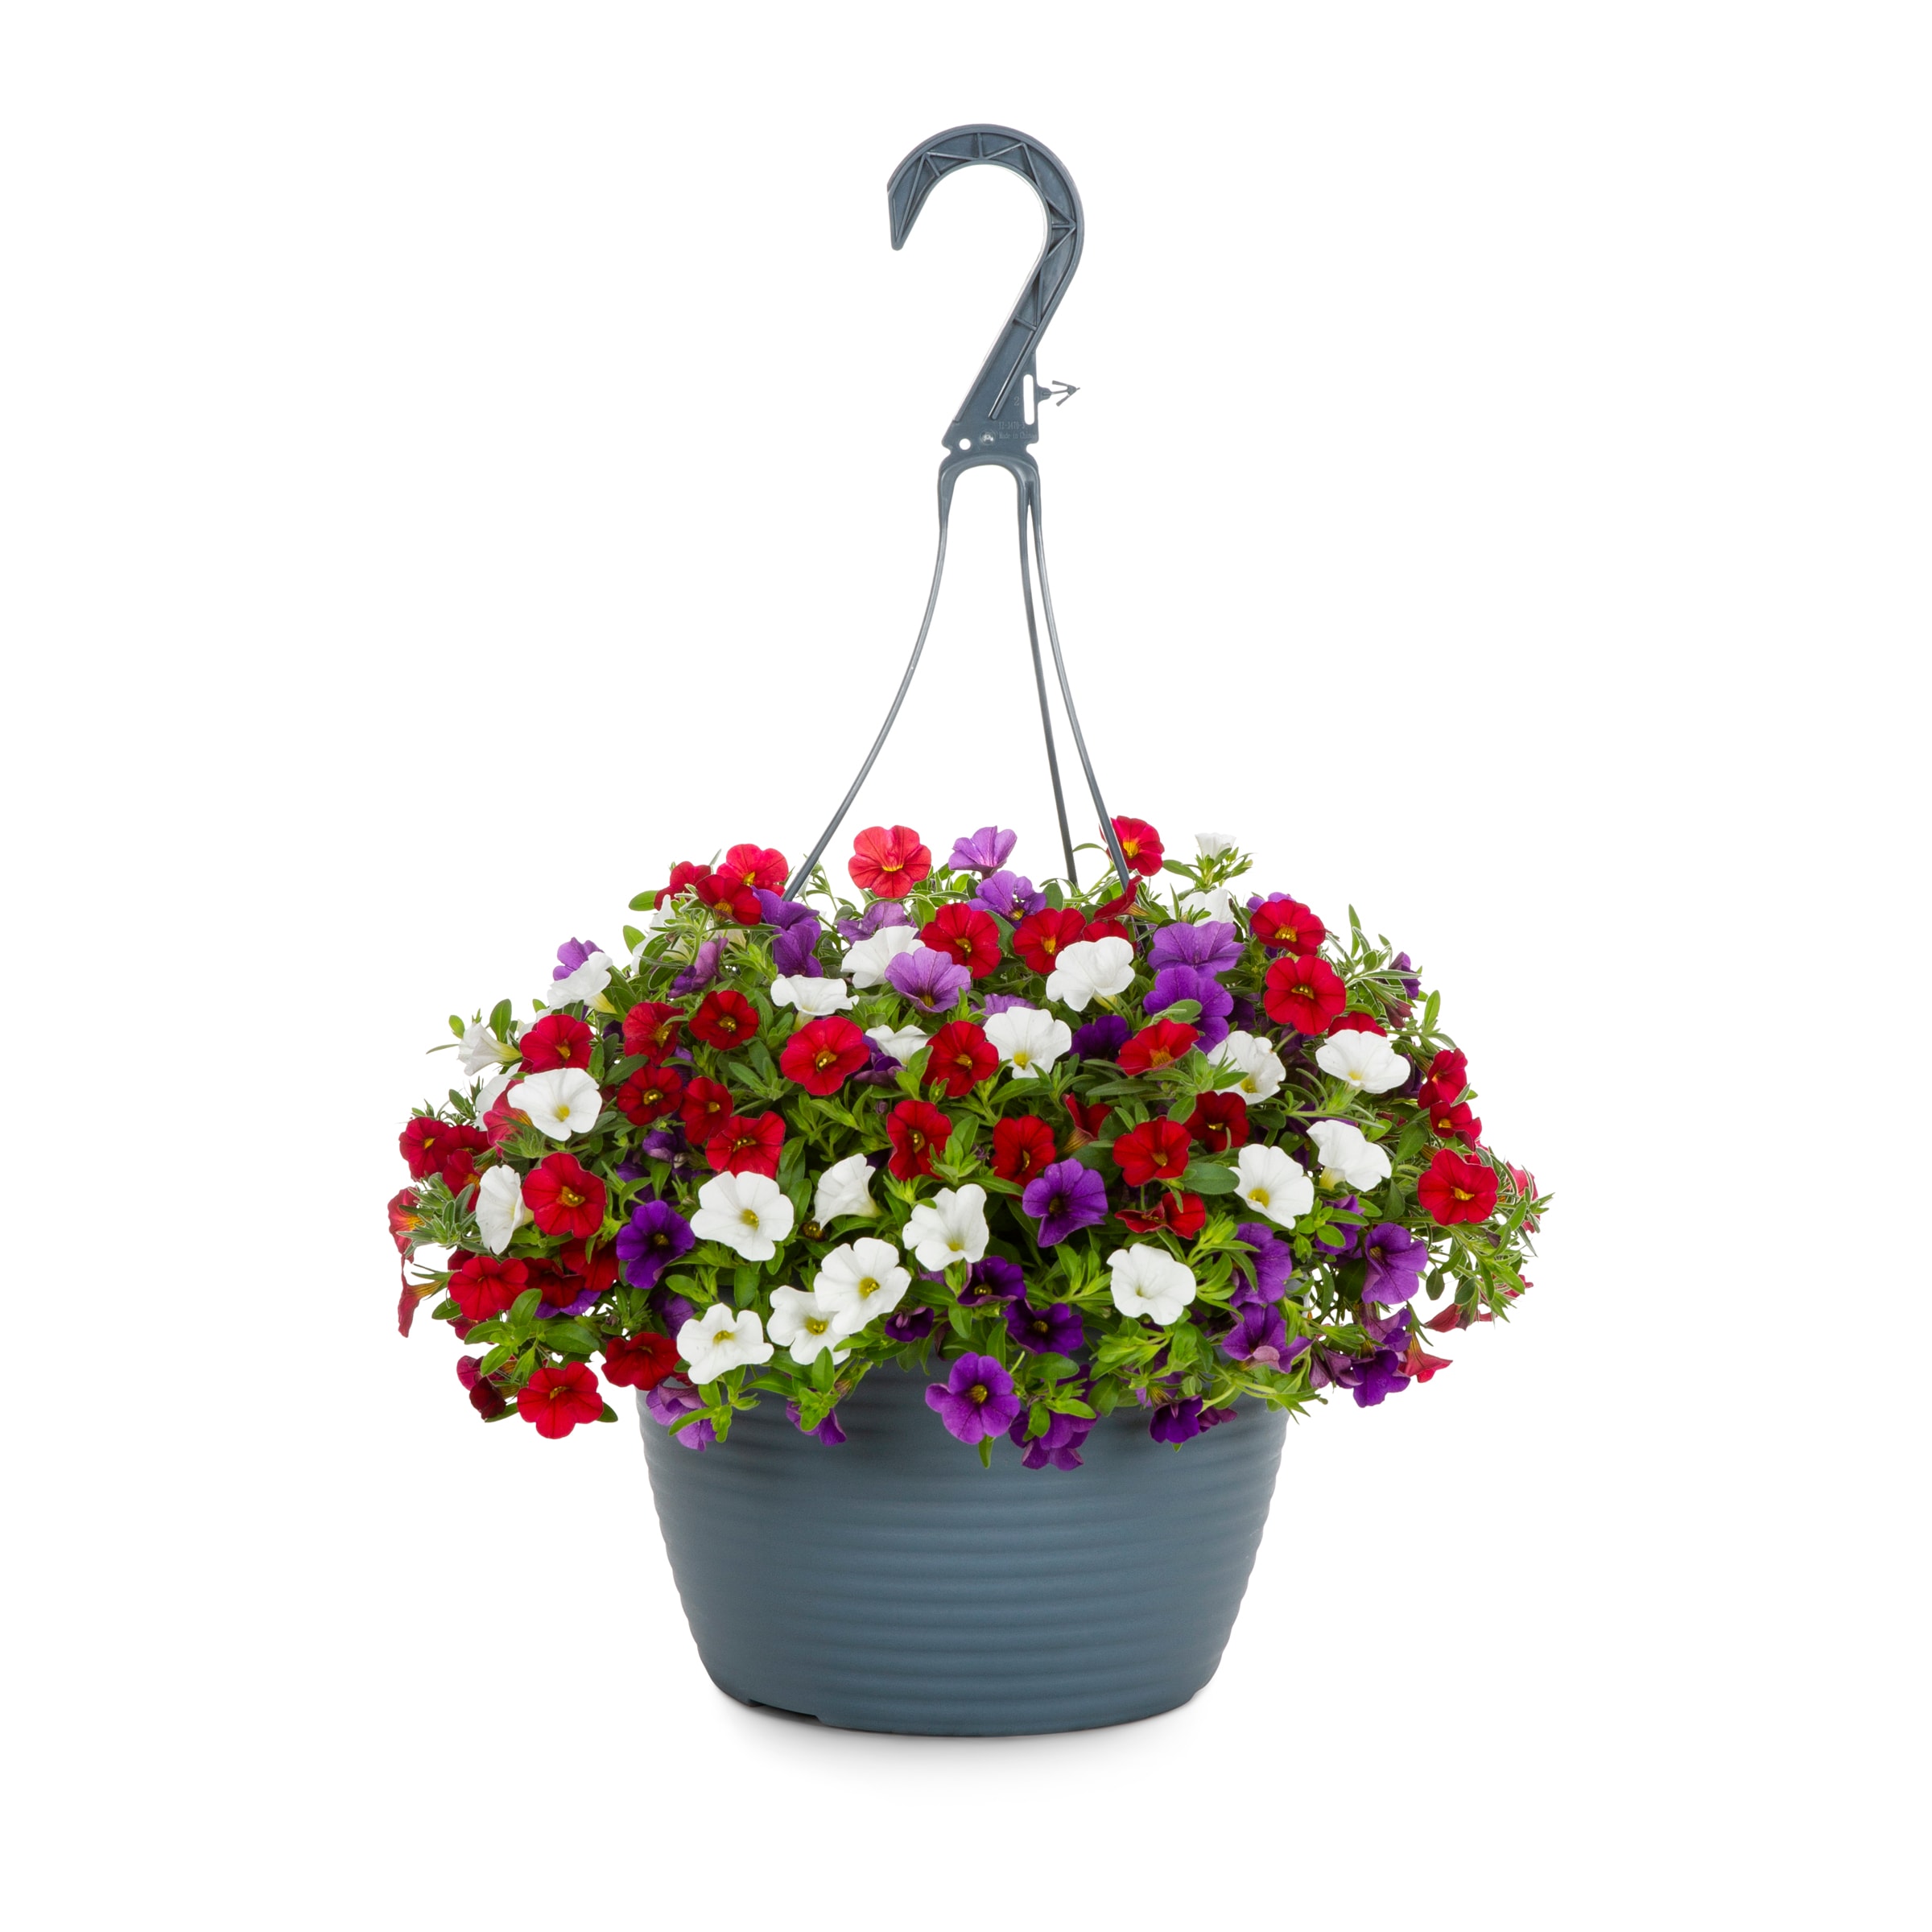 Image of Calibrachoa hanging basket flower